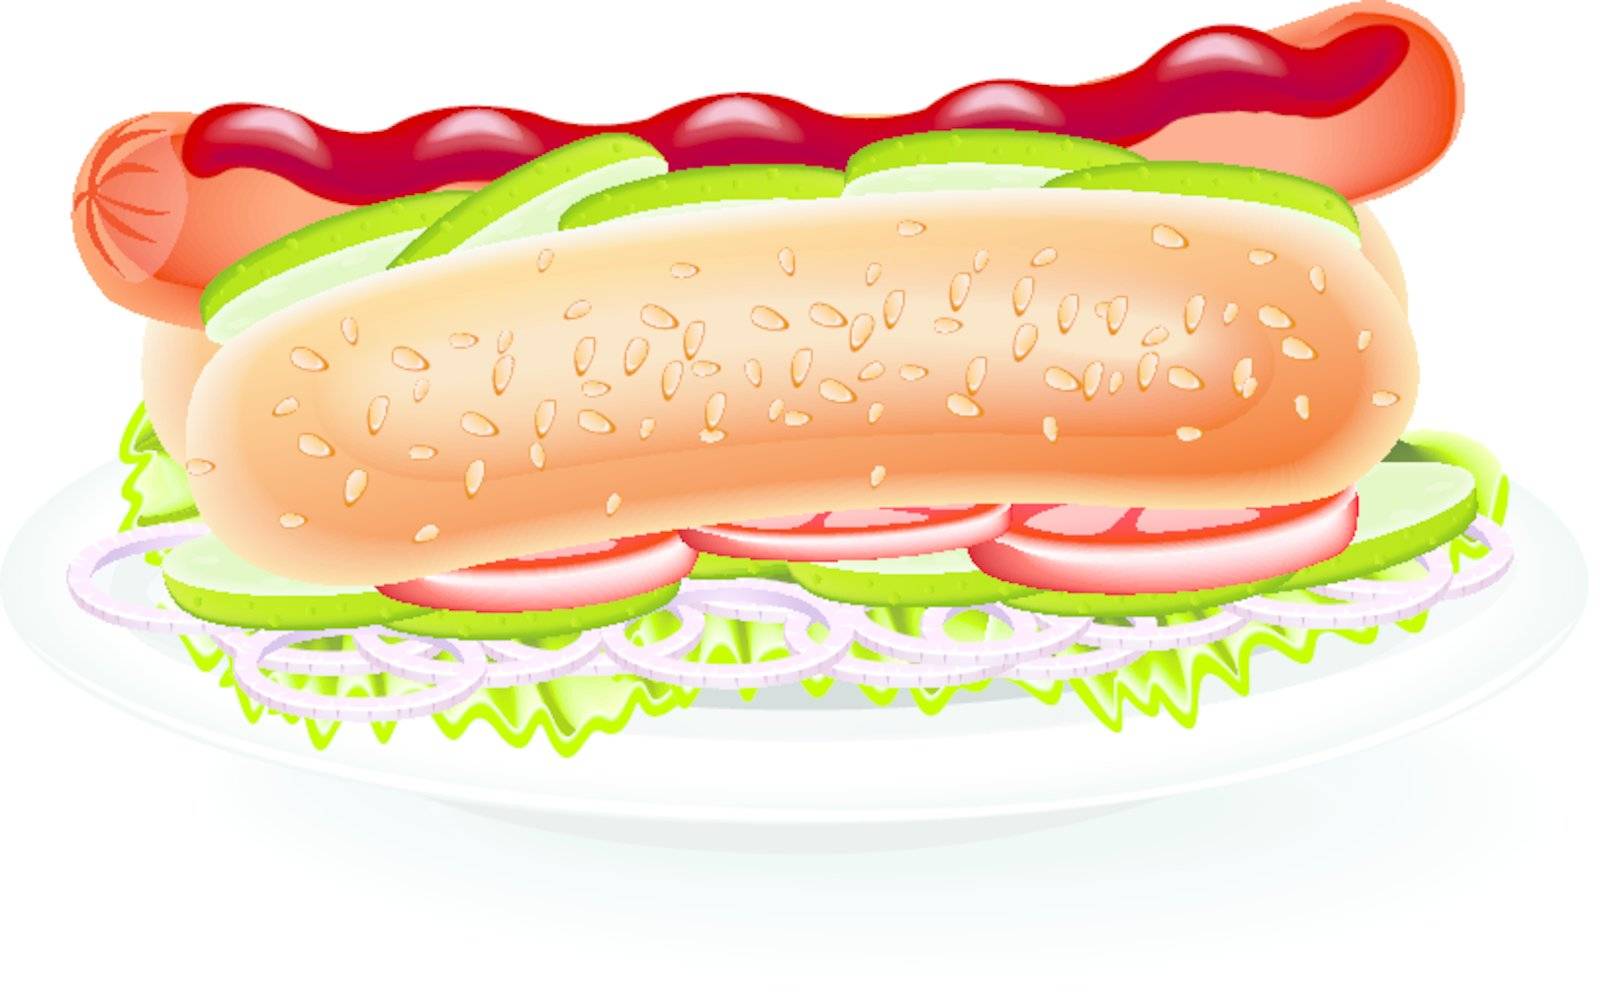 Hot Dog by Kireeva